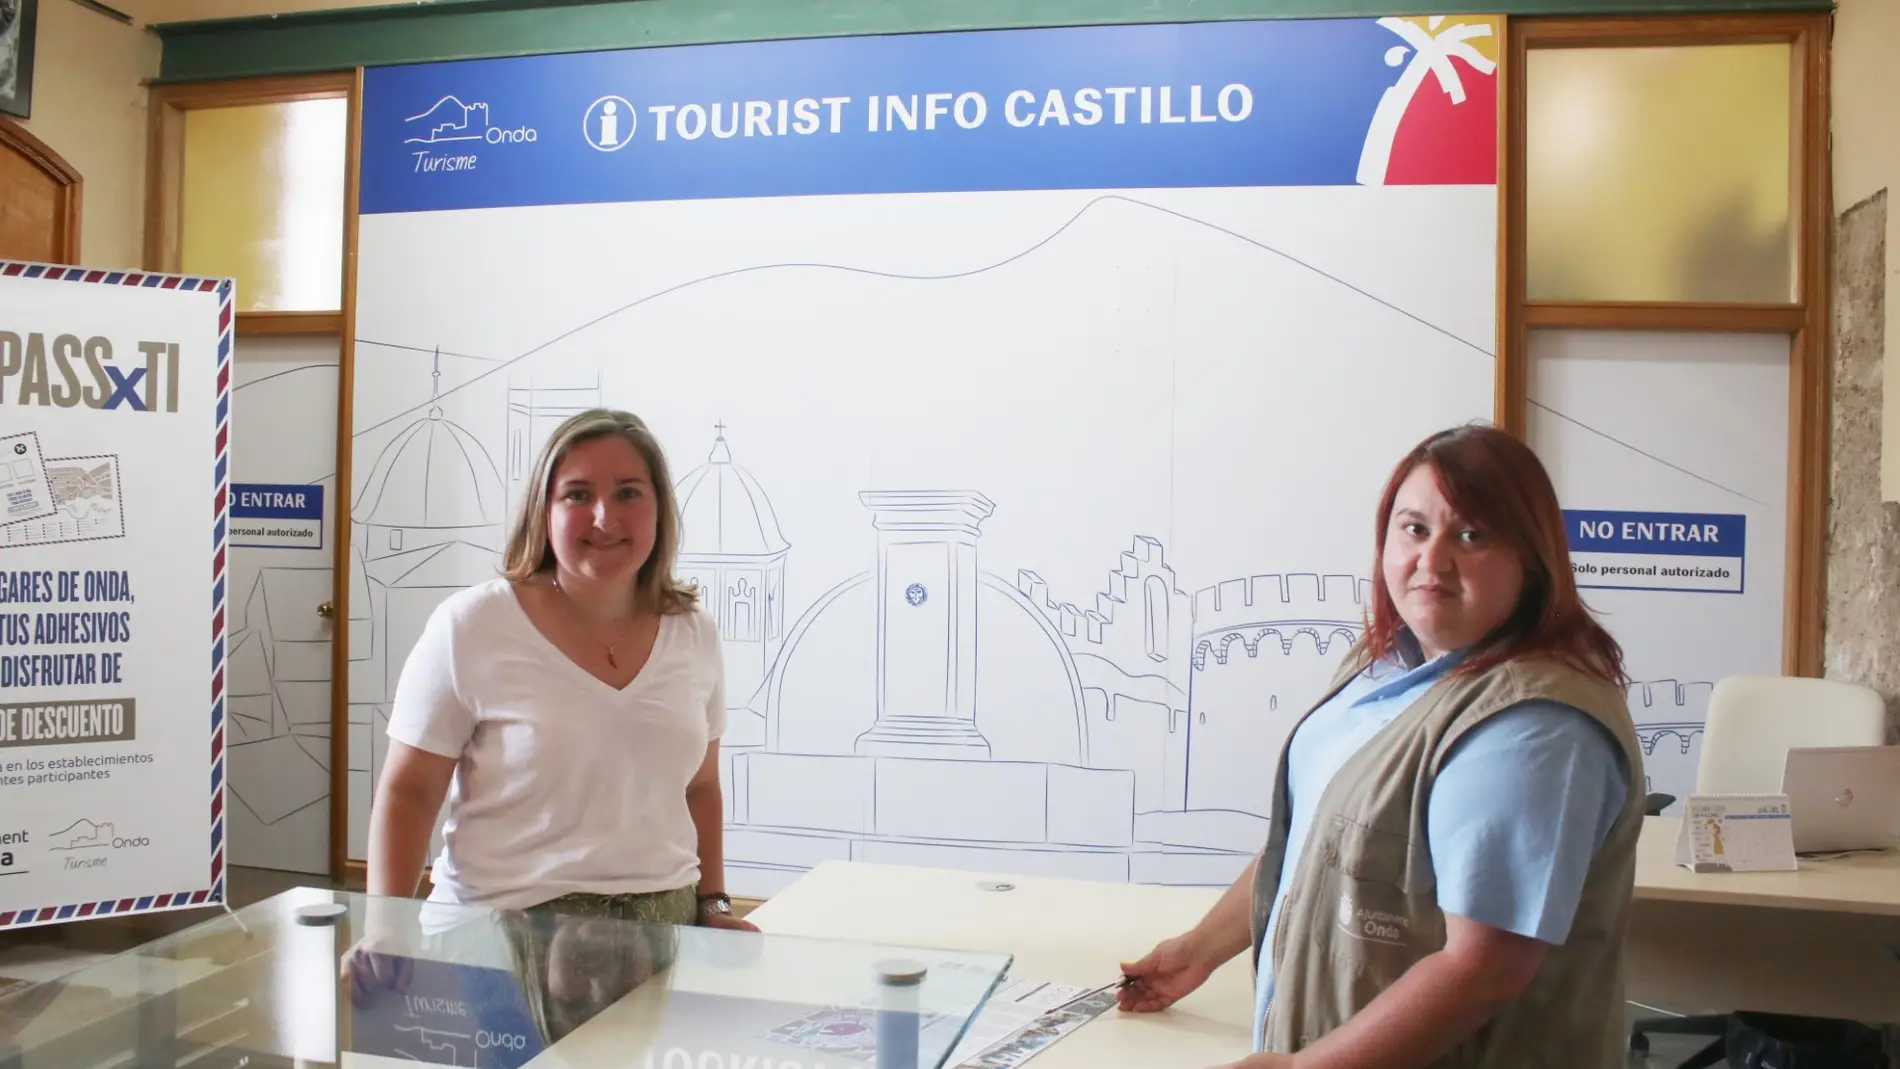 Onda Finaliza la reforma de la oficina de turismo en el Castillo de las 300 Torres